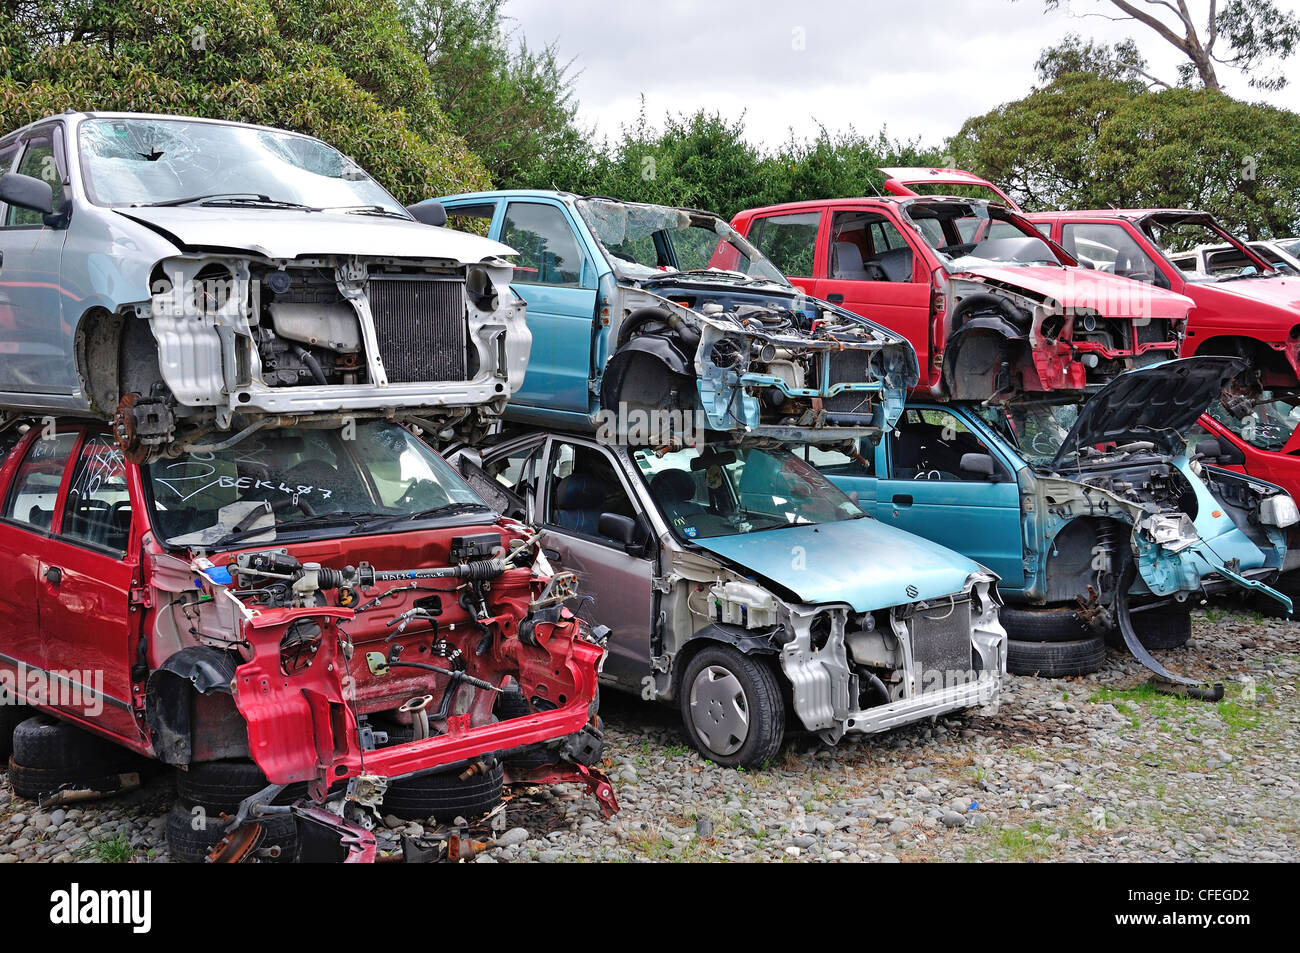 Voitures à la ferraille empilés dans des pièces d'automobiles, à Lincoln, Christchurch, Canterbury, île du Sud, Nouvelle-Zélande Banque D'Images